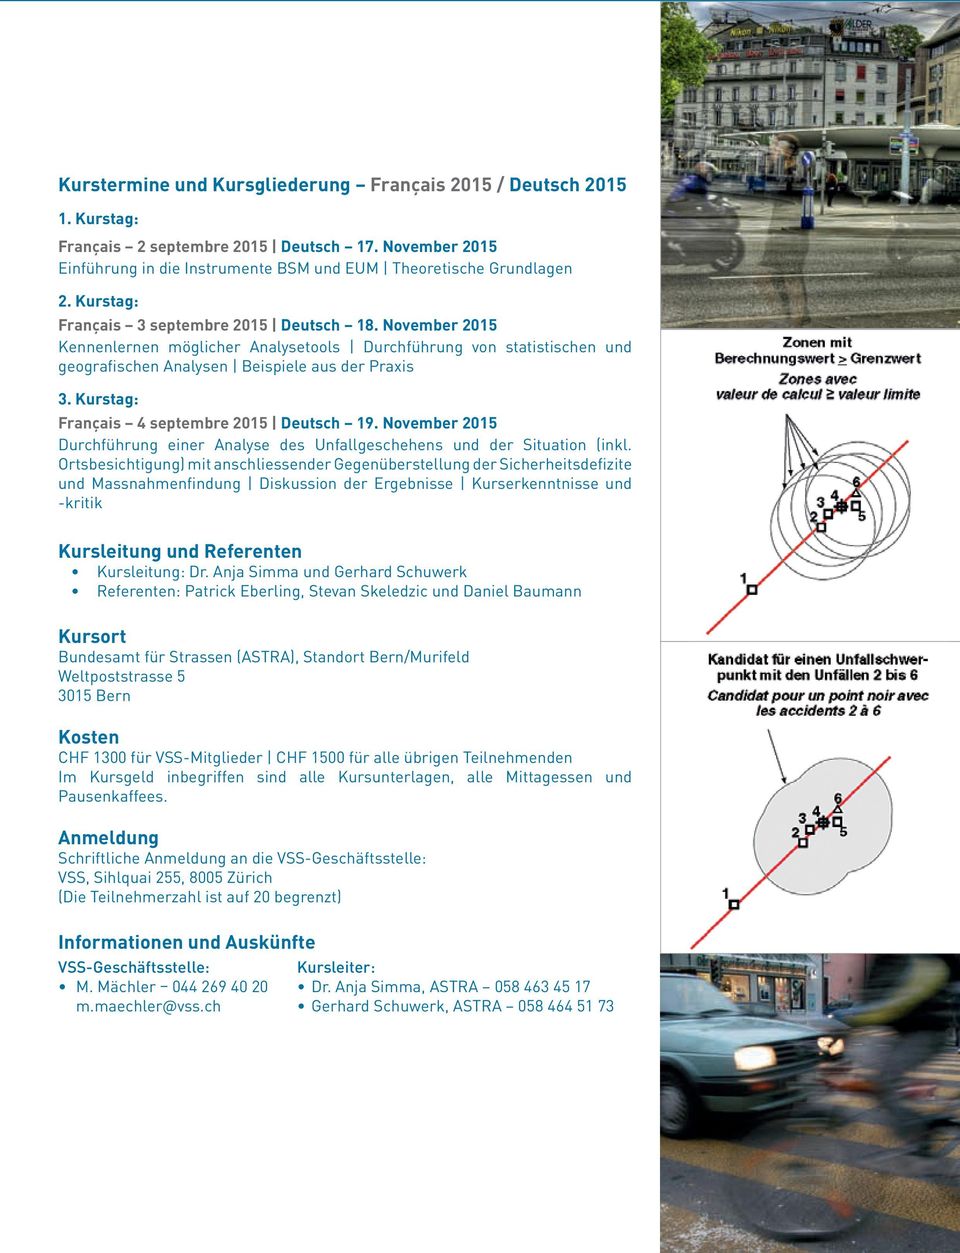 Kurstag: Français 4 septembre 2015 Deutsch 19. November 2015 Durchführung einer Analyse des Unfallgeschehens und der Situation (inkl.